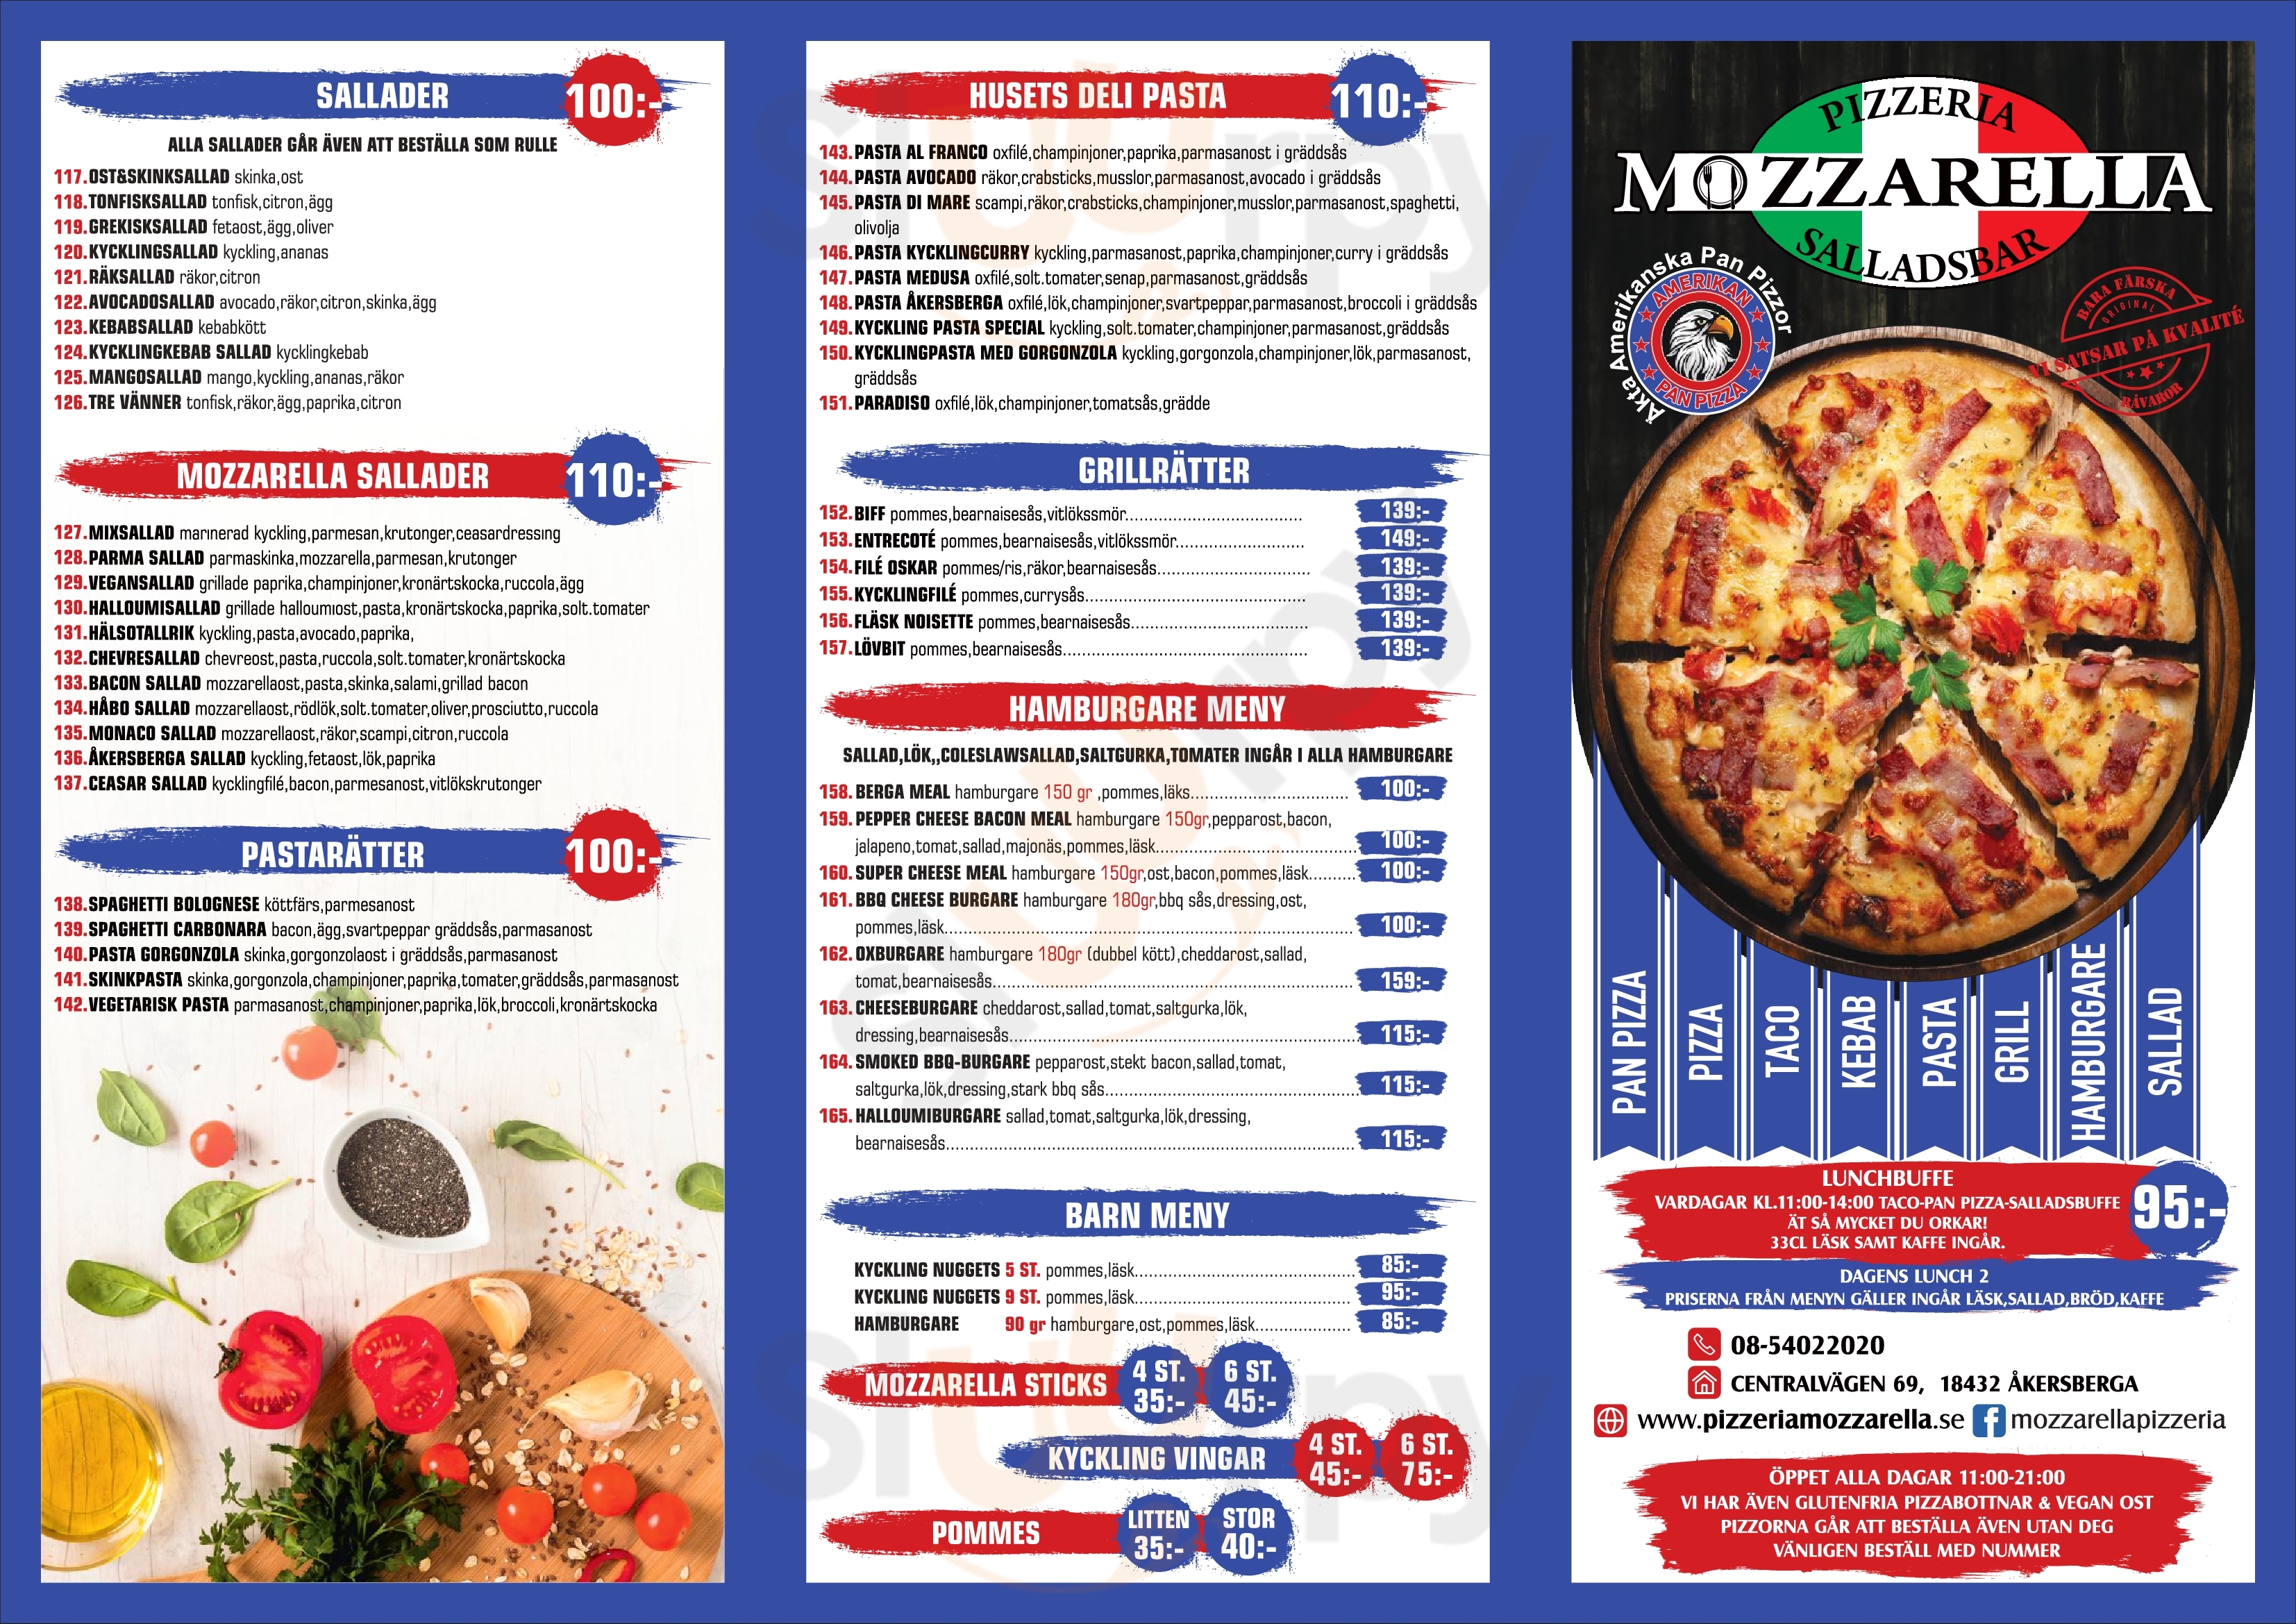 Pizzeria Mozzarella Åkersberga Menu - 1